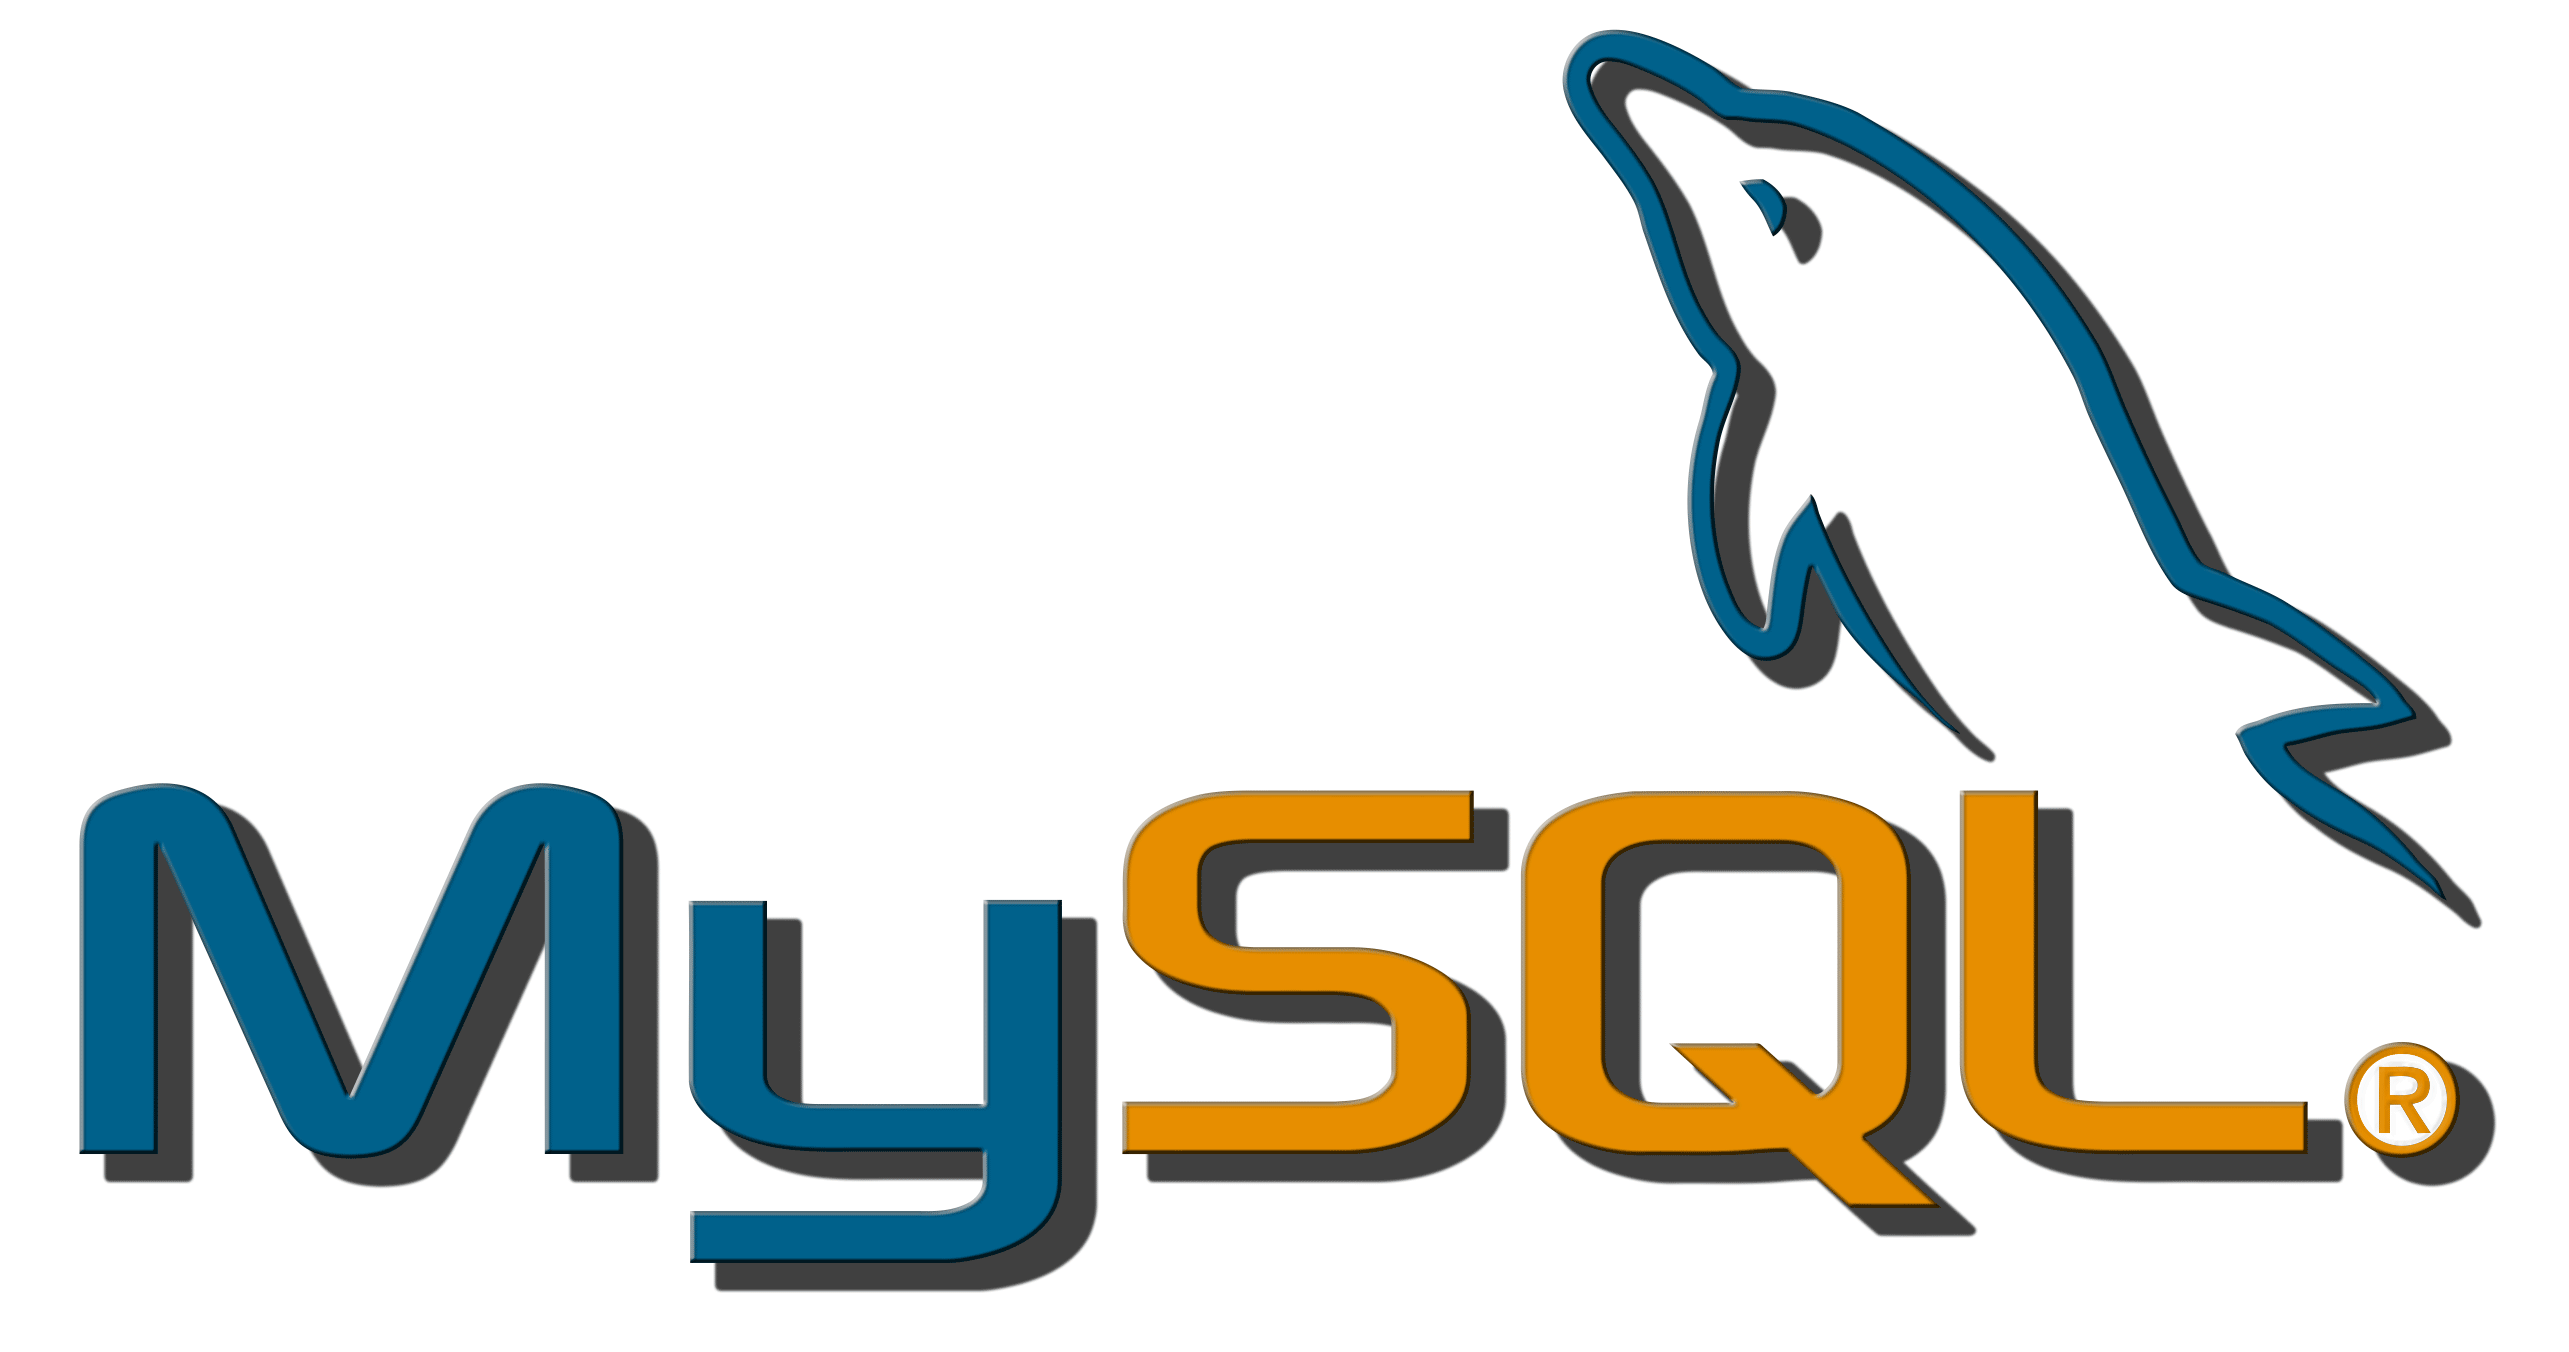 【MySQL】InnoDB 什么情况下会产生死锁